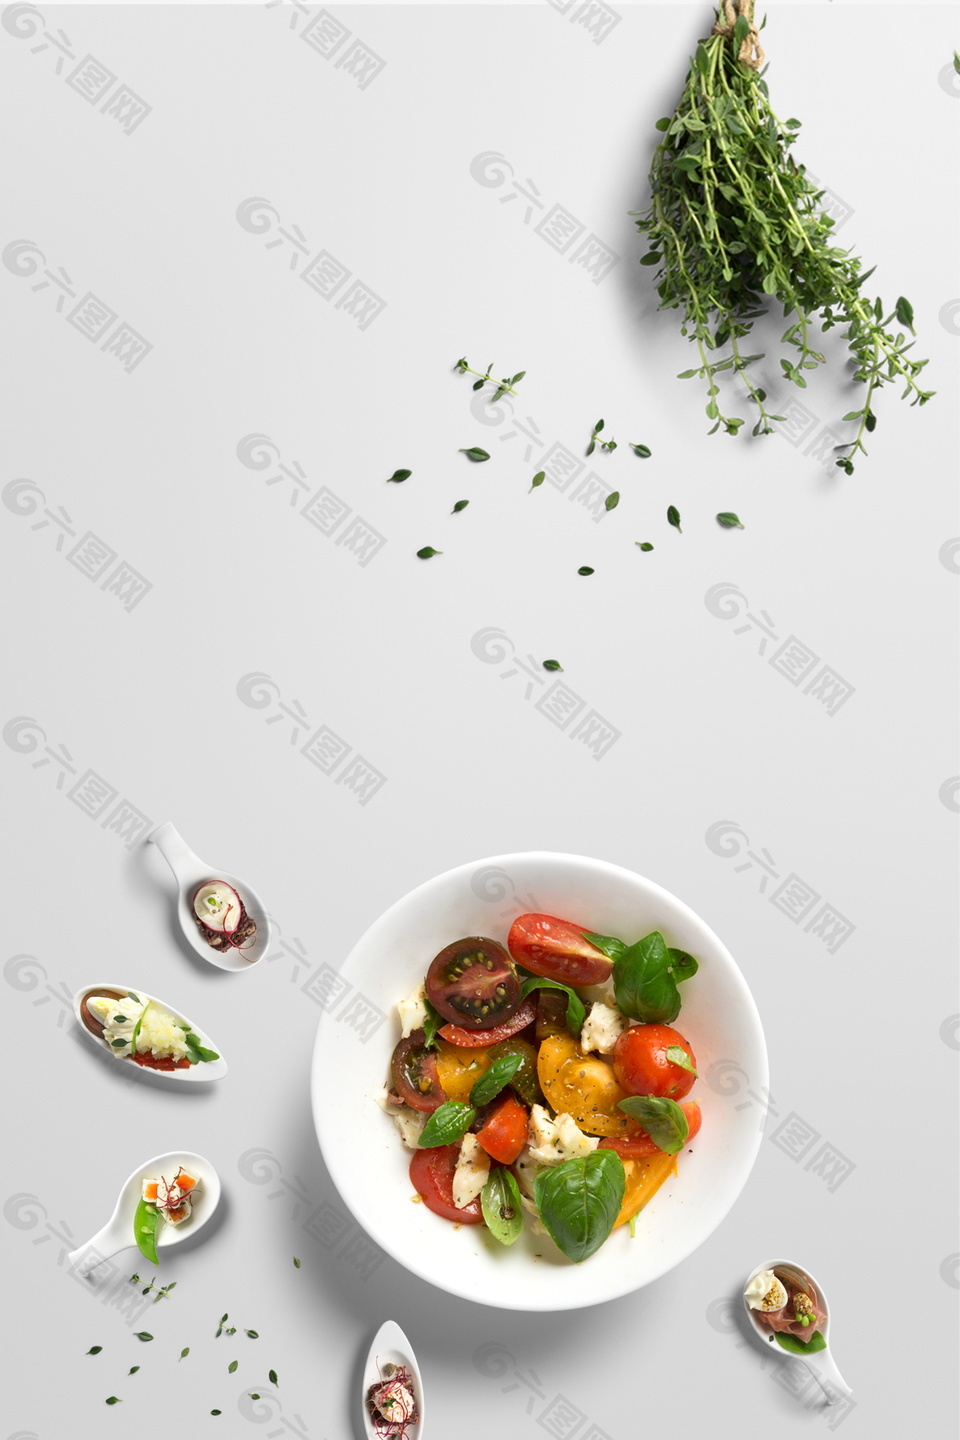 美食节蔬菜水果沙拉背景素材